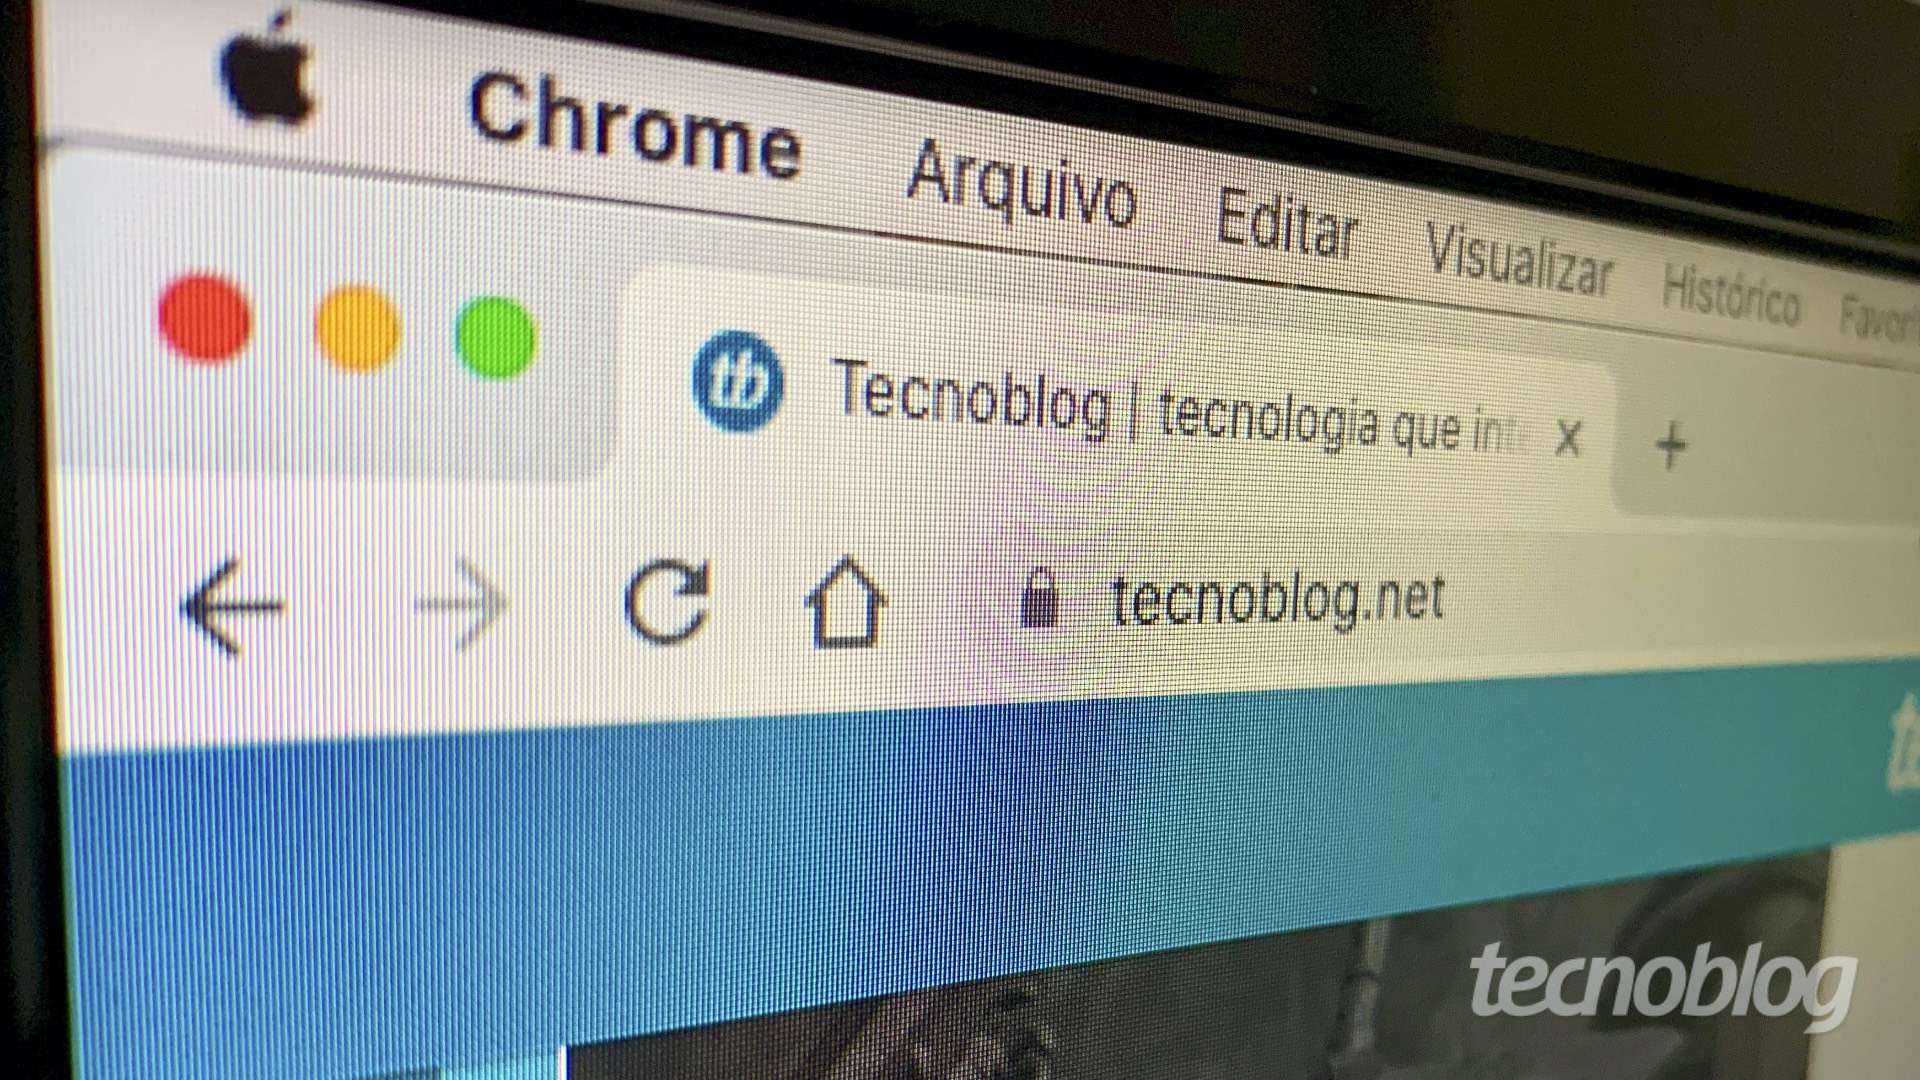 Google Chrome 90 permite enviar texto destacado em páginas da web | Aplicativos e Software